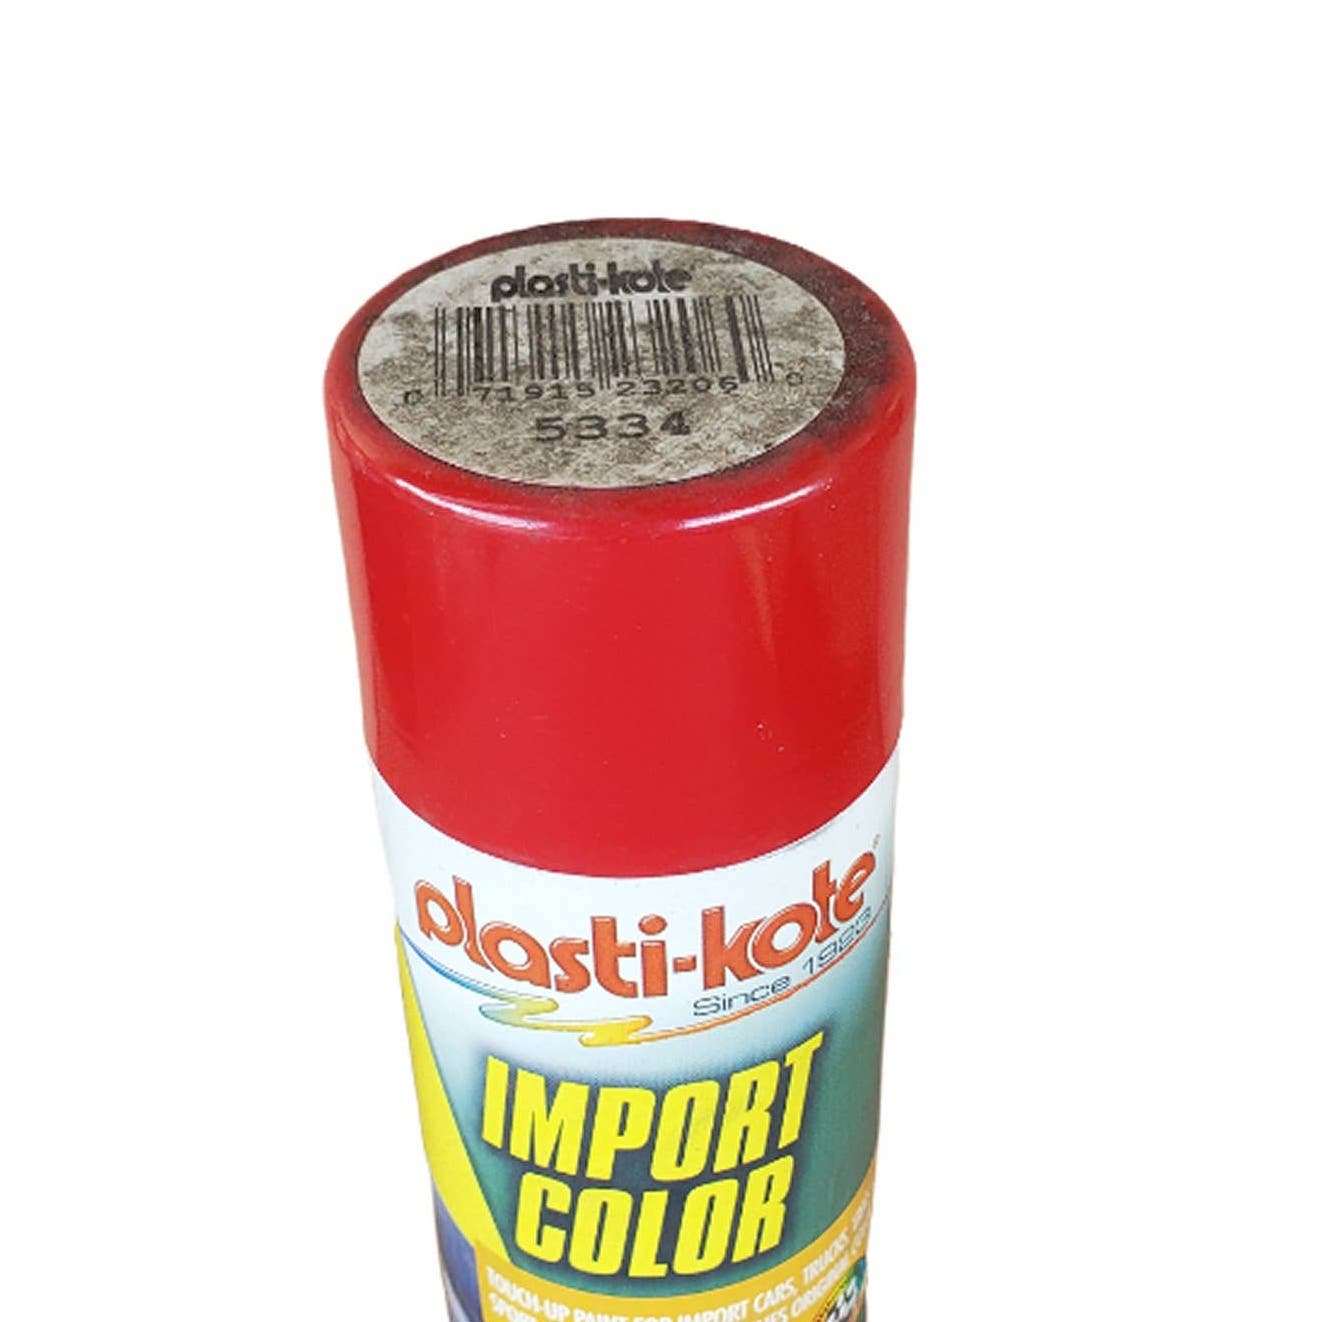 PlastiKote Import Color 5334 Vintage Auto Touch-Up Spray Paint 6 oz.